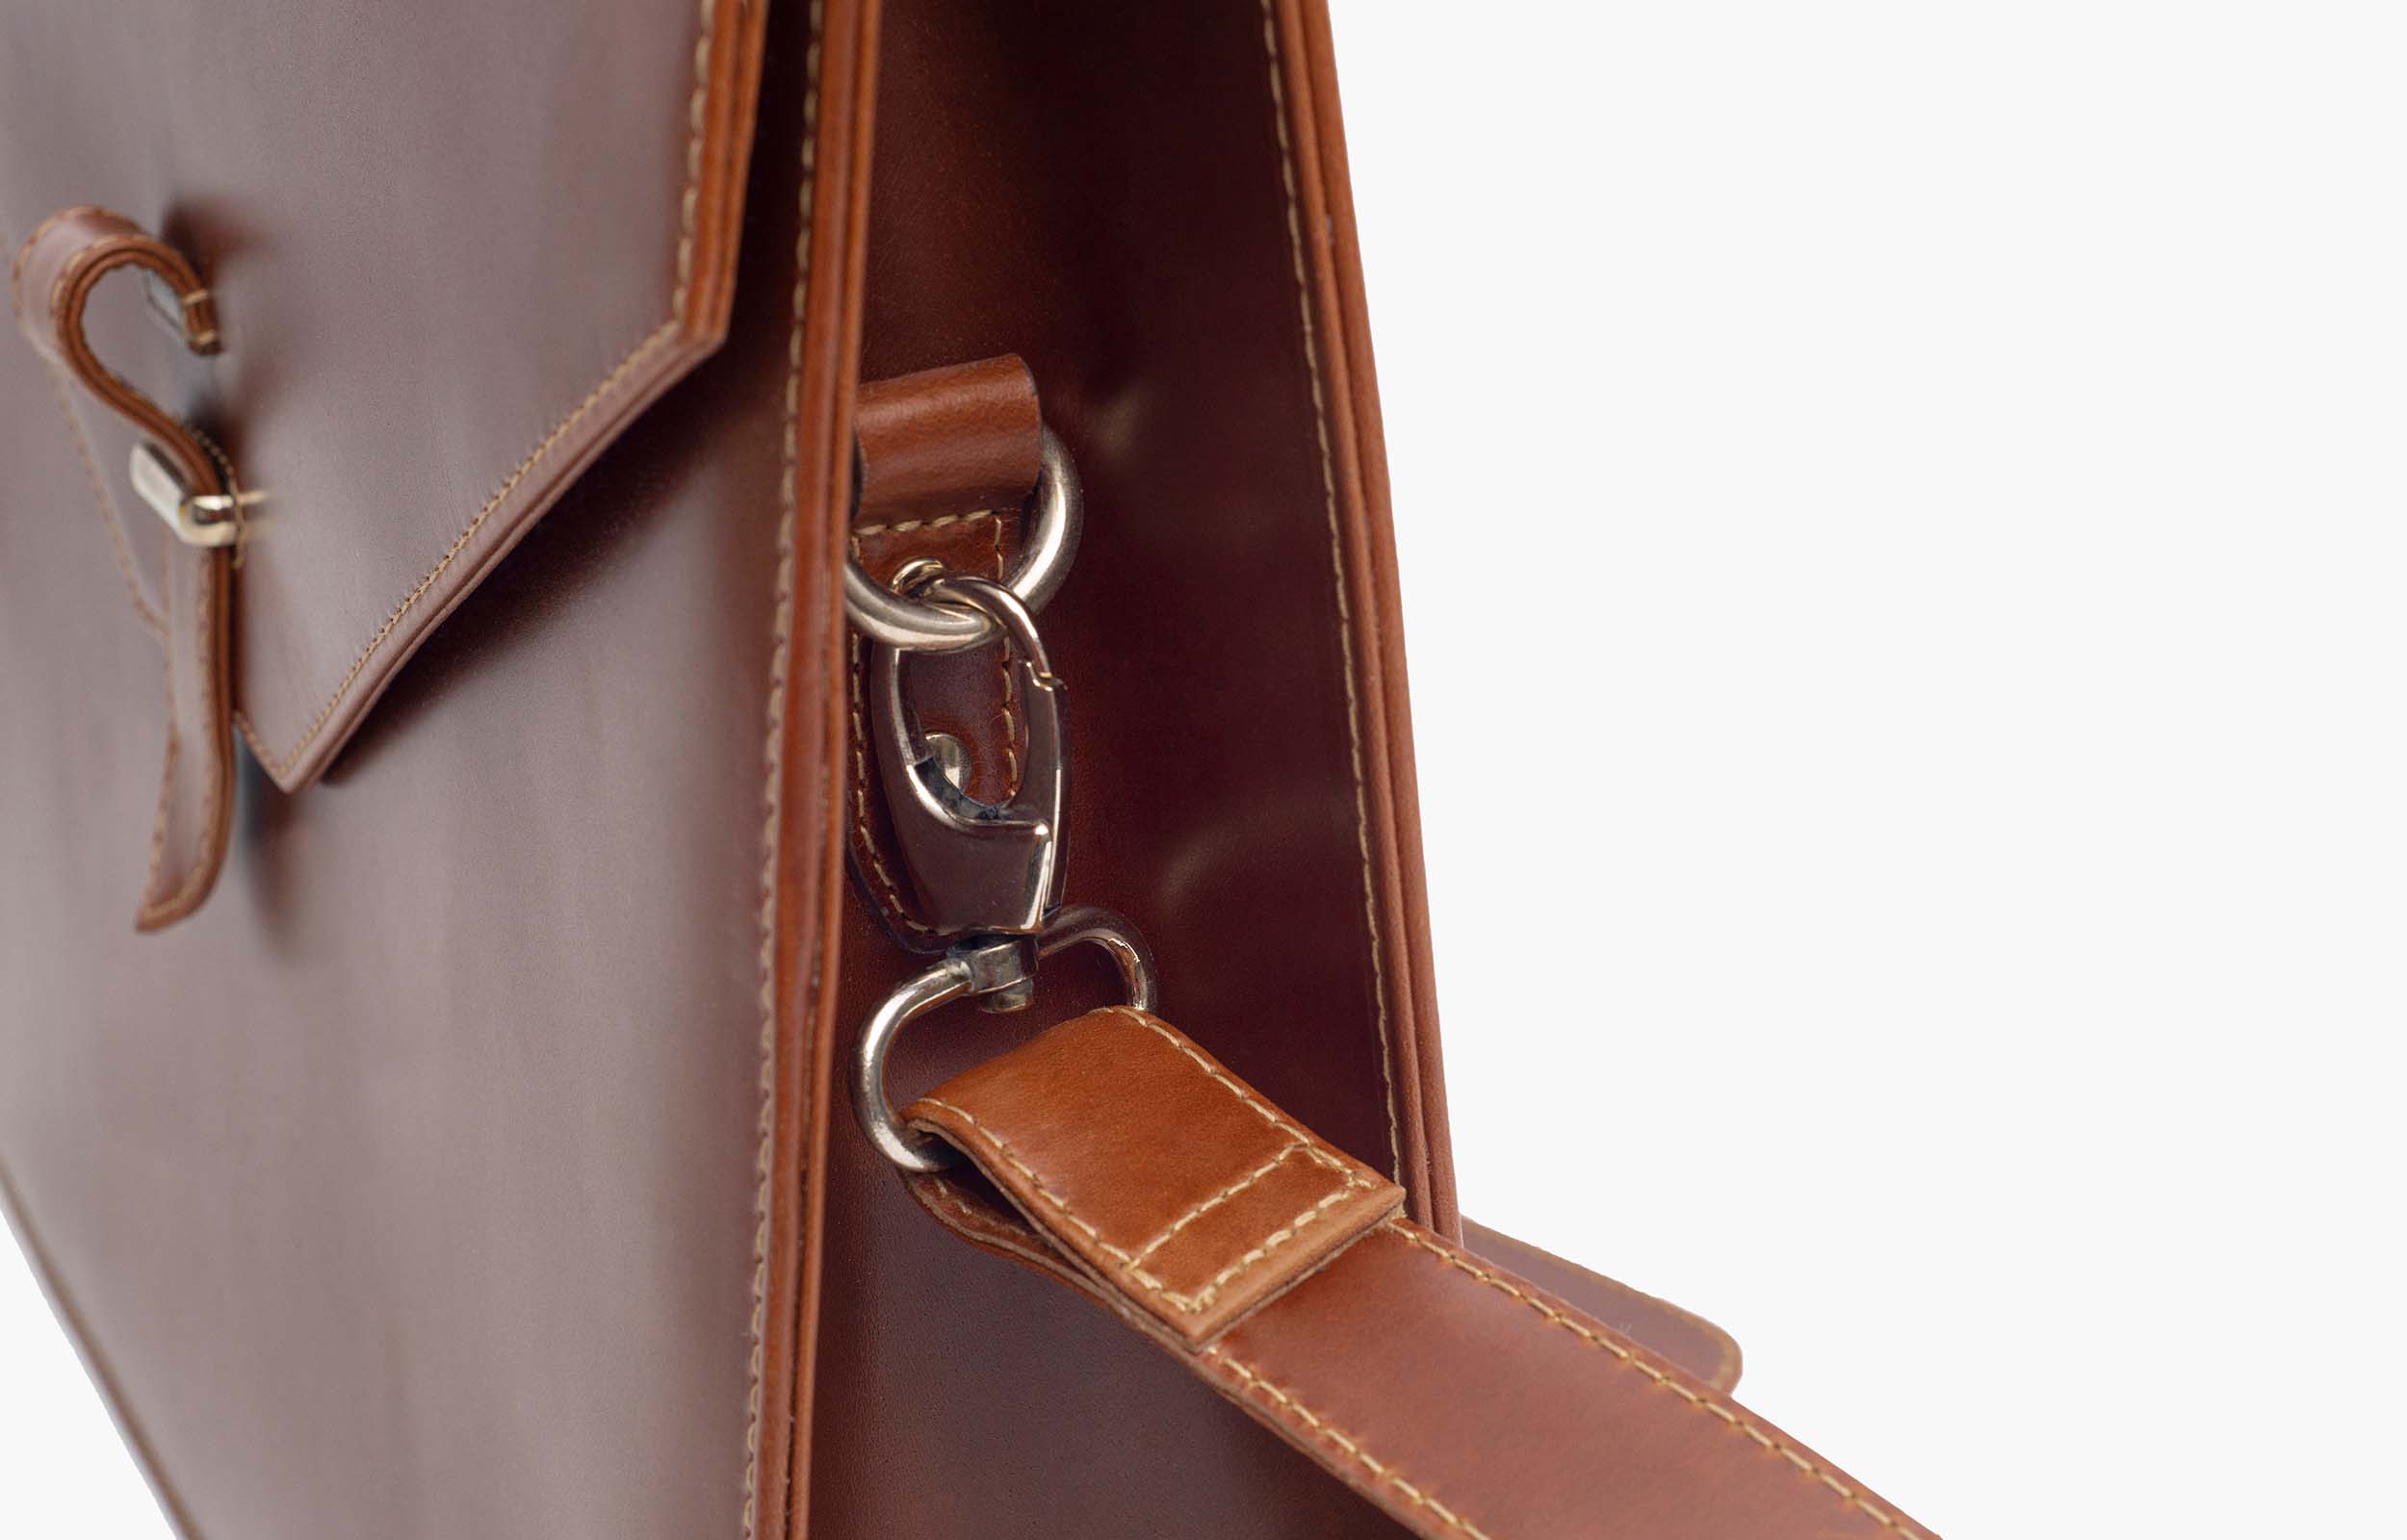 Oscar Geneva Brown Leather Bag UK 7